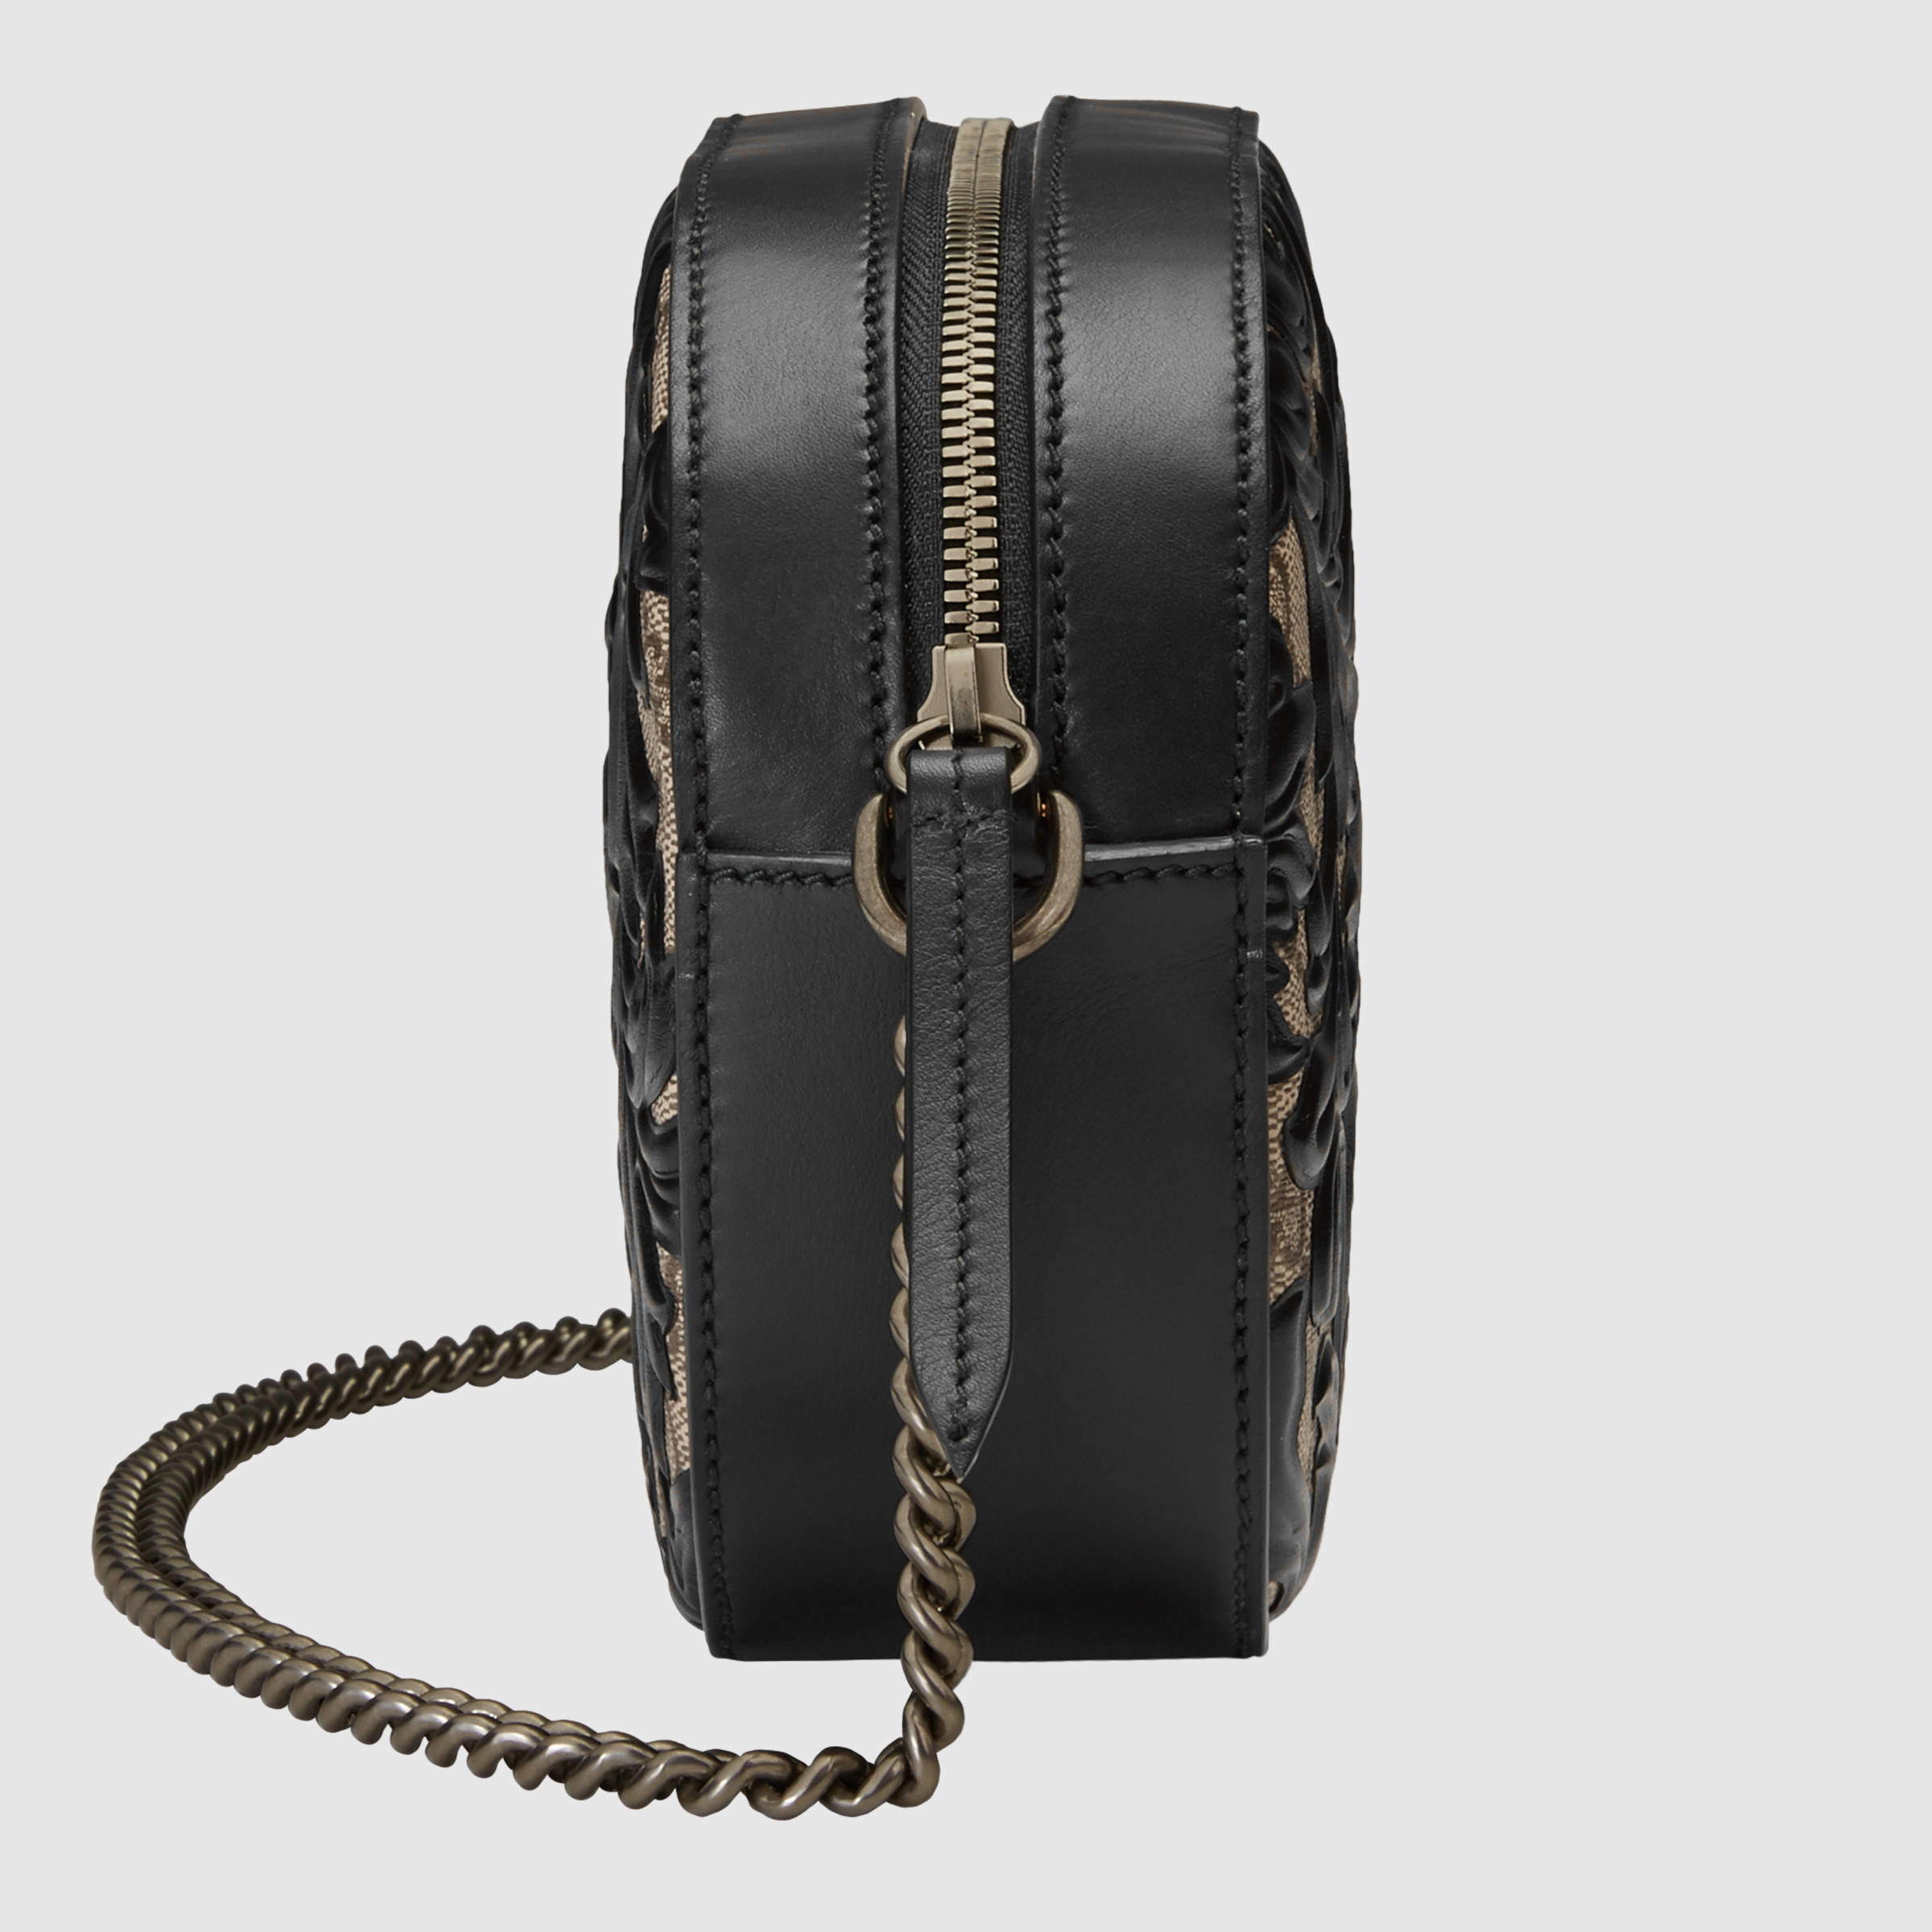 Gucci Canvas Arabesque Gg Supreme Mini Chain Bag in Black - Lyst